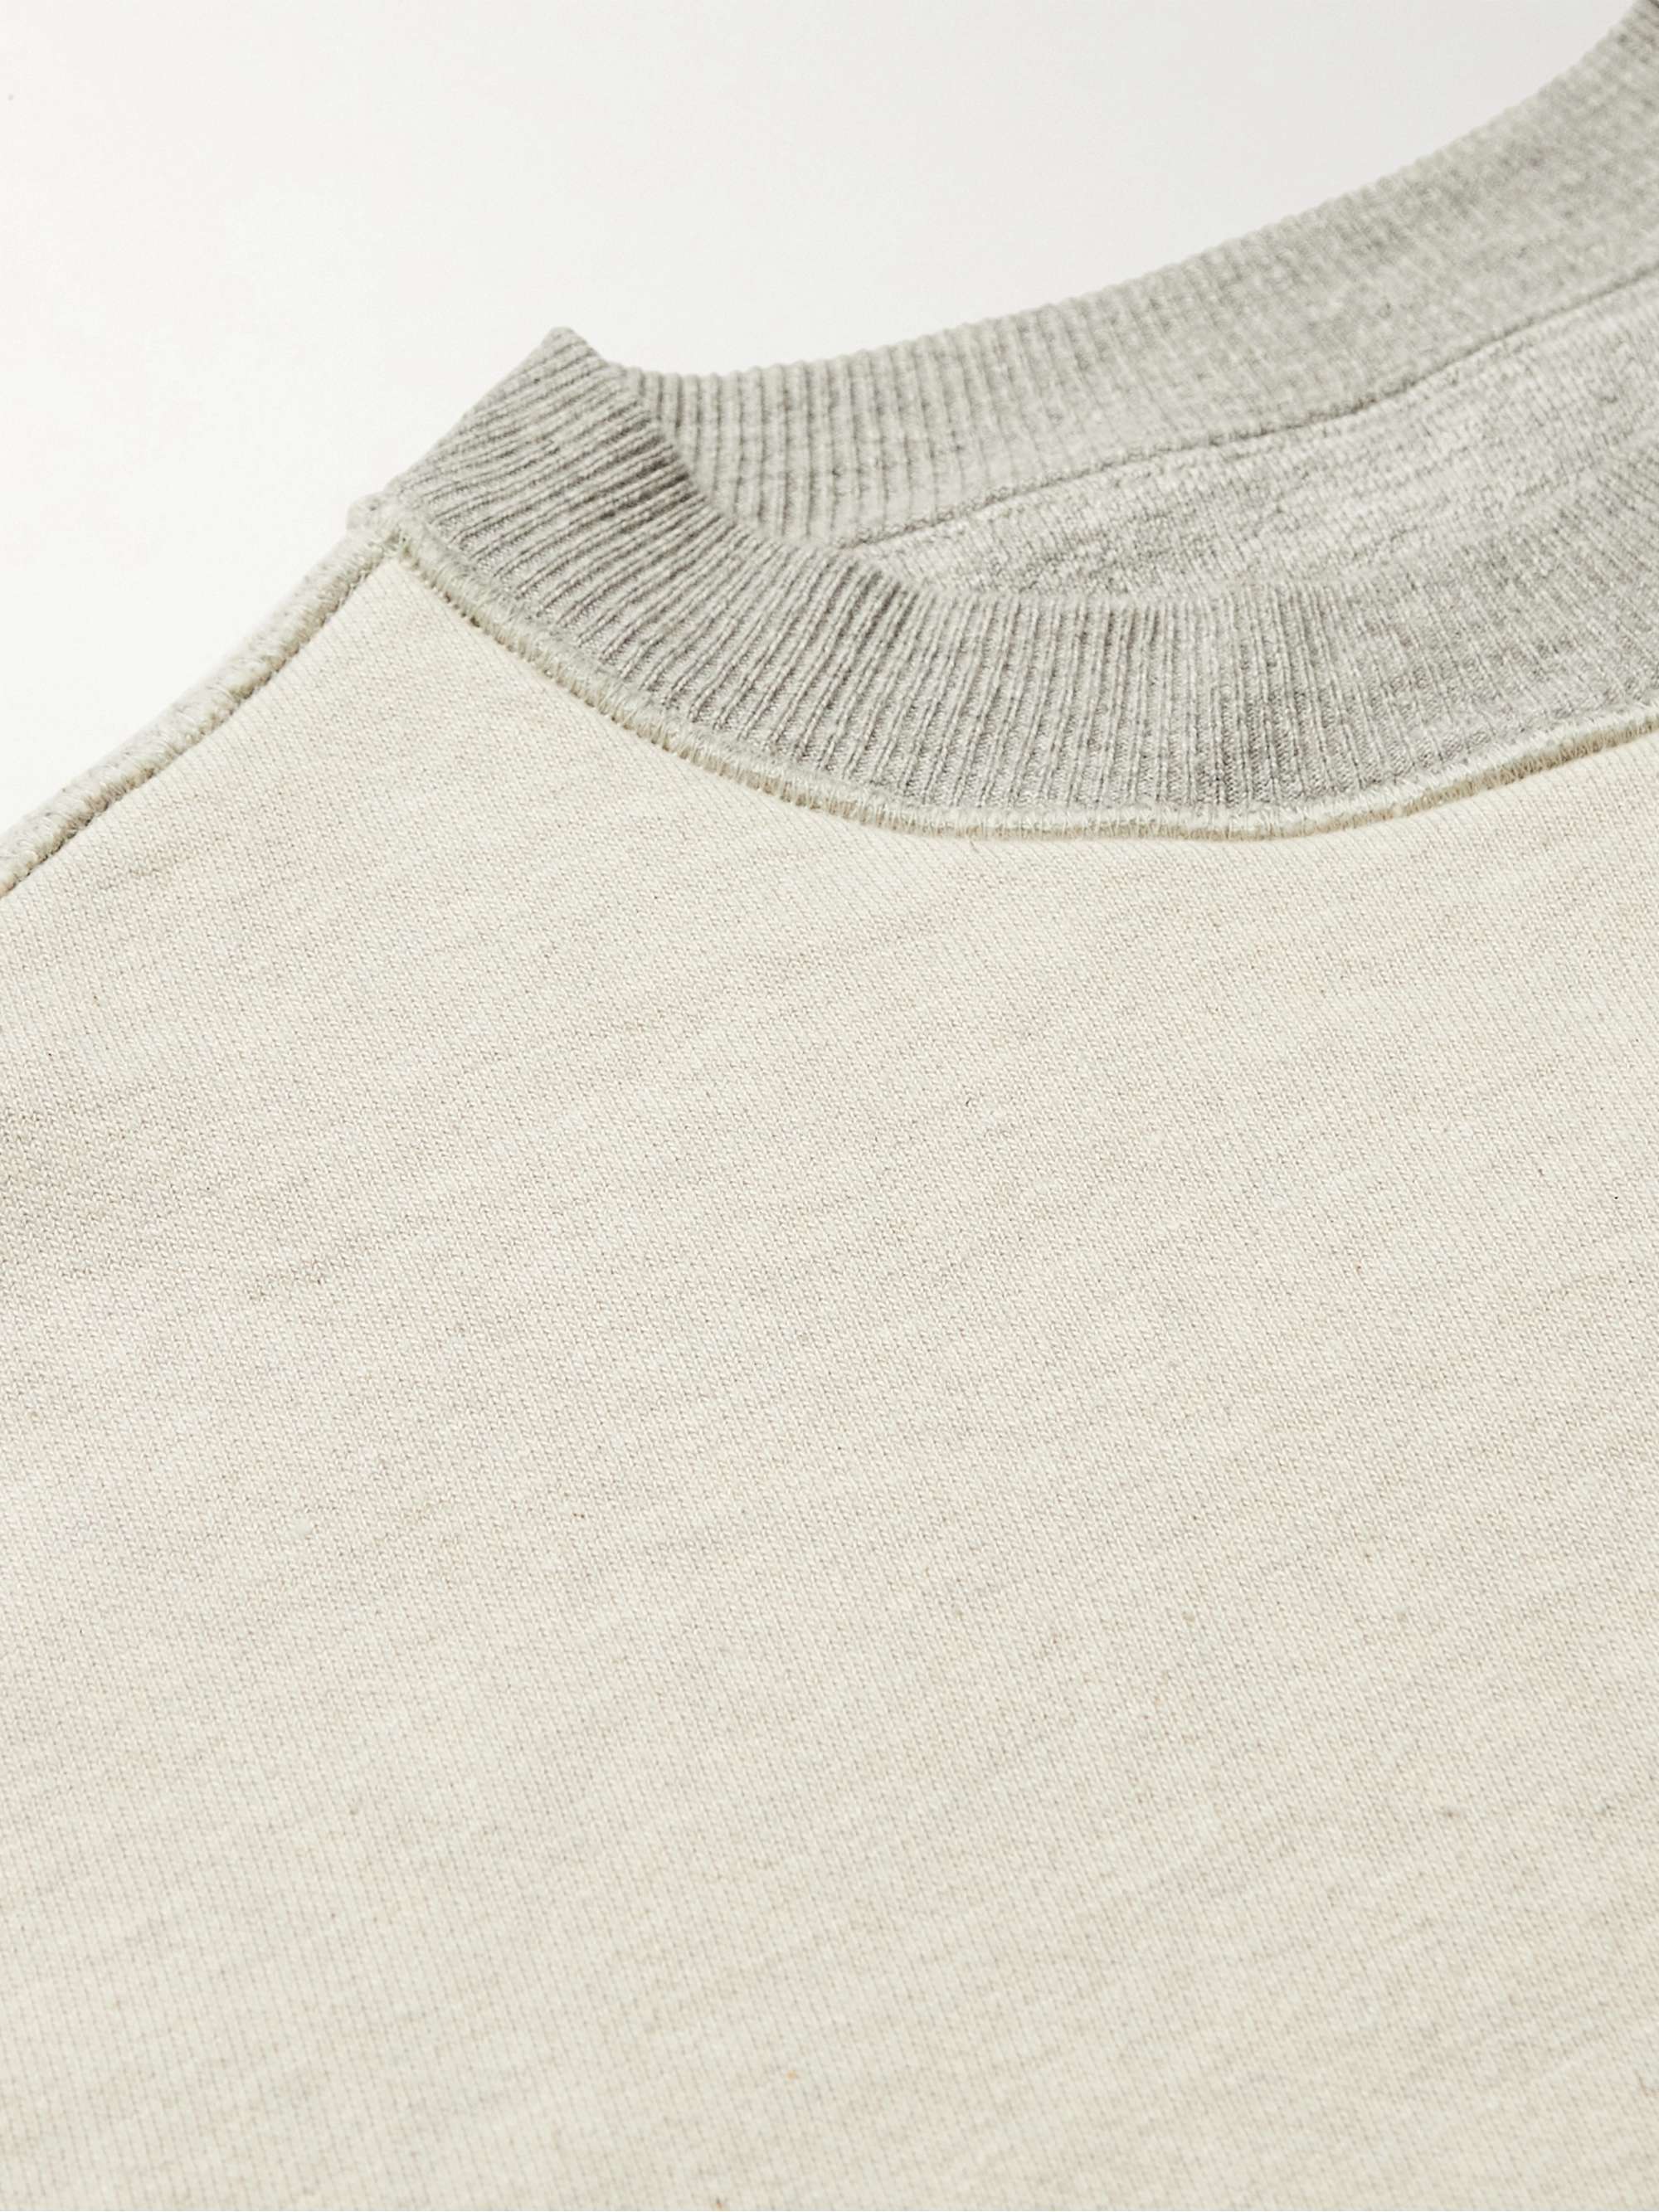 KAPITAL Coneybowy Reversible Printed Cotton-Jersey Sweatshirt